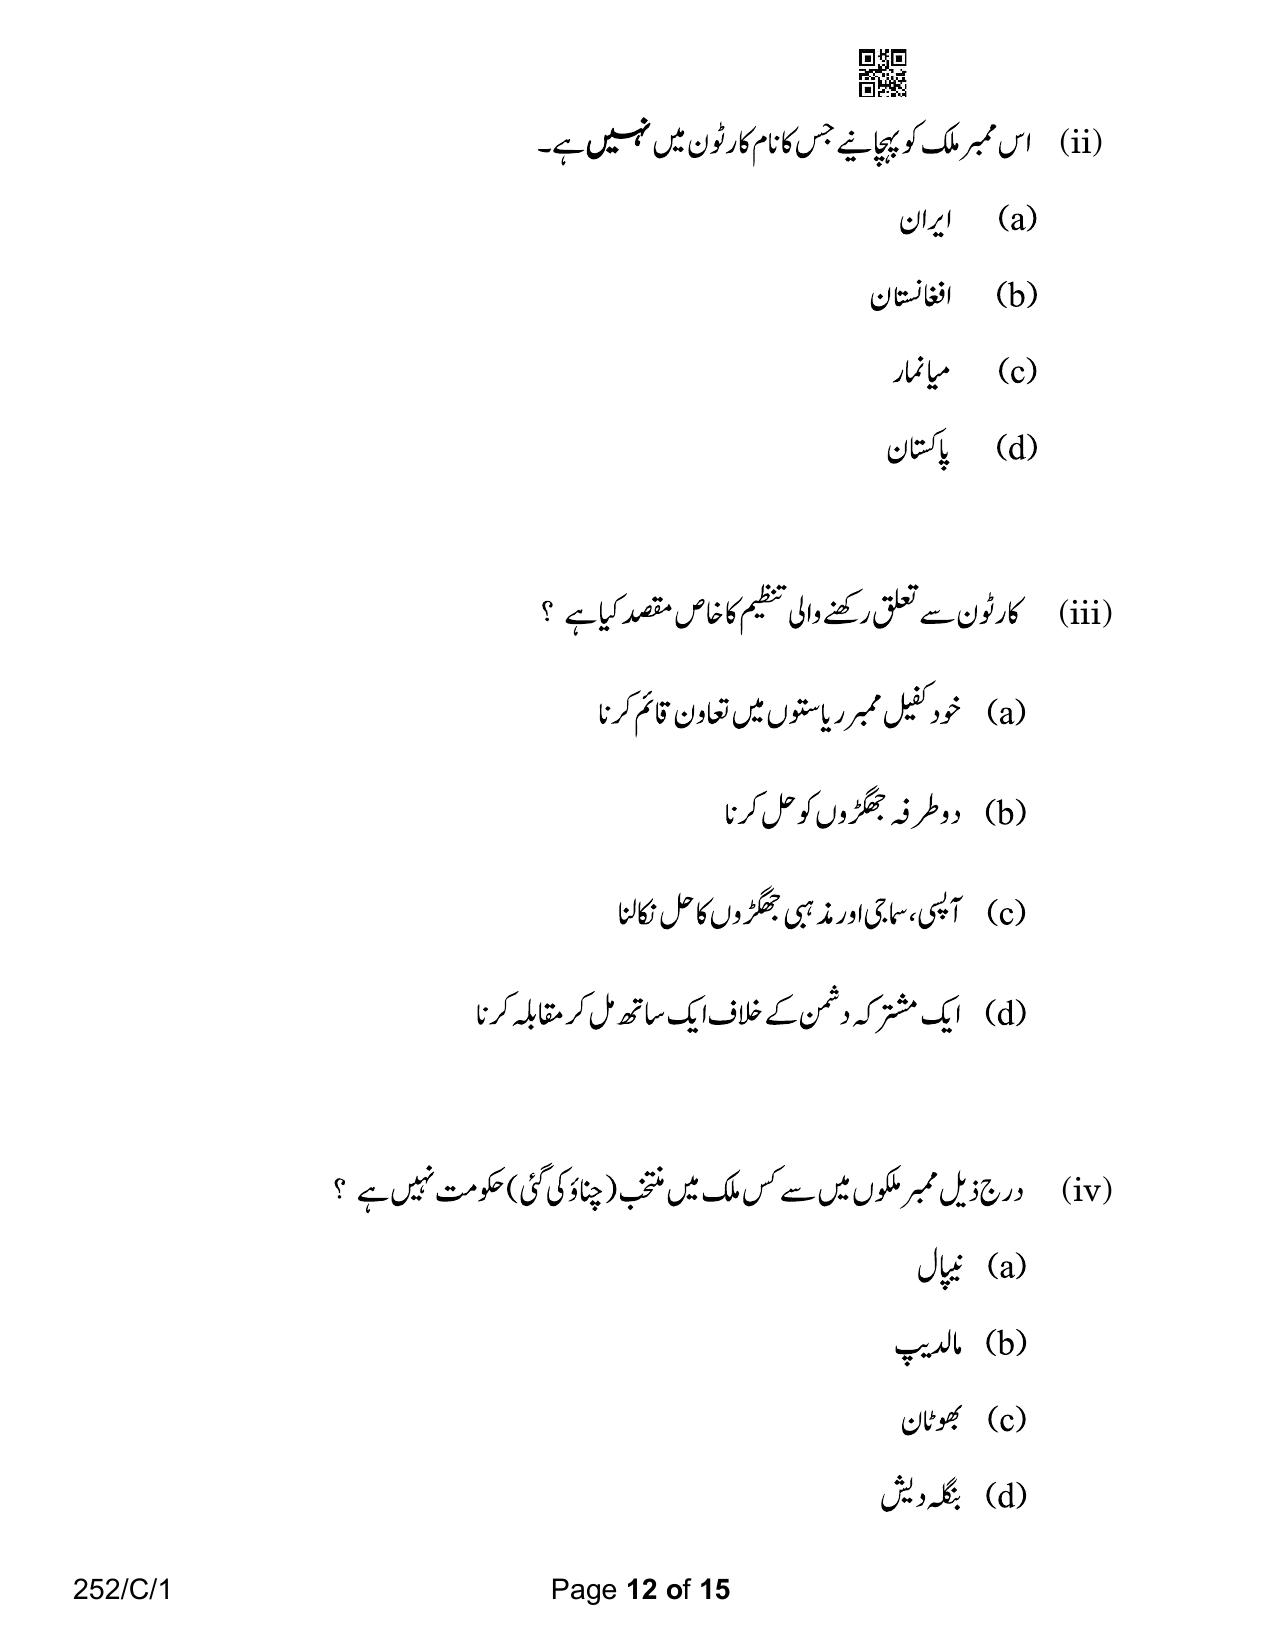 CBSE Class 12 252-1 Political Science Urdu Version 2023 (Compartment) Question Paper - Page 12